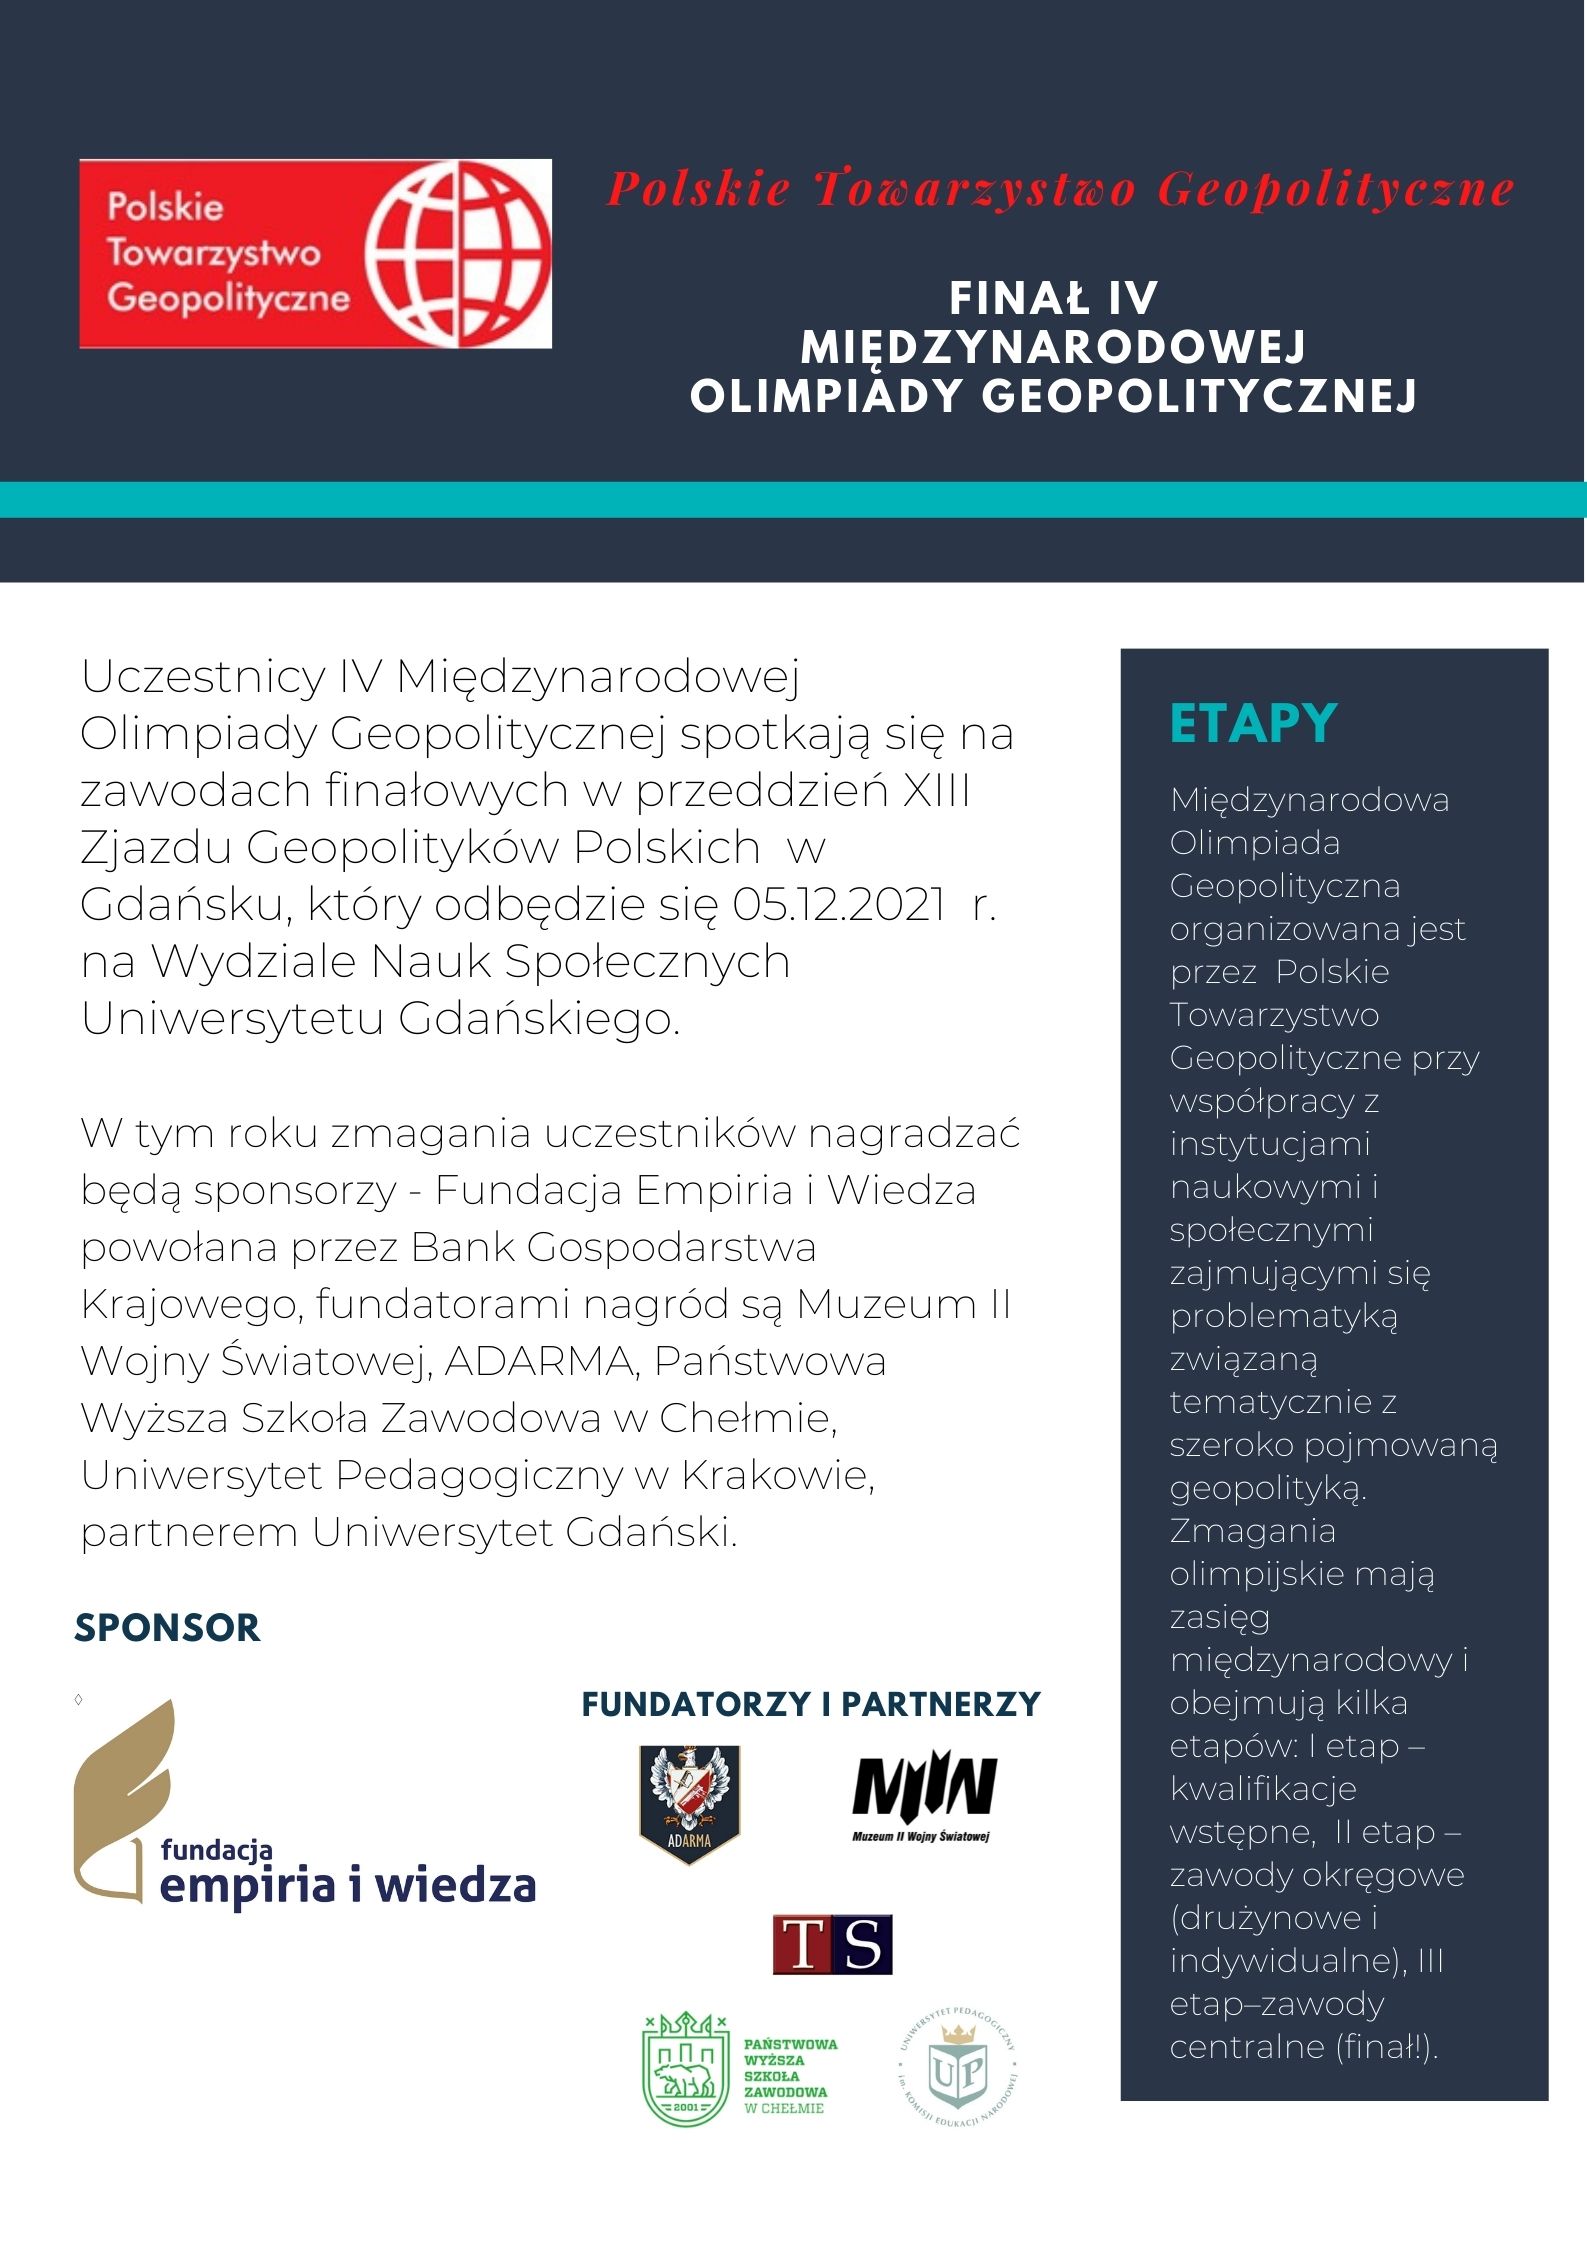 finał IV Międzynarodowej Olimpiady Geopolitycznej – sponsorzy, fundatorzy i partnerzy